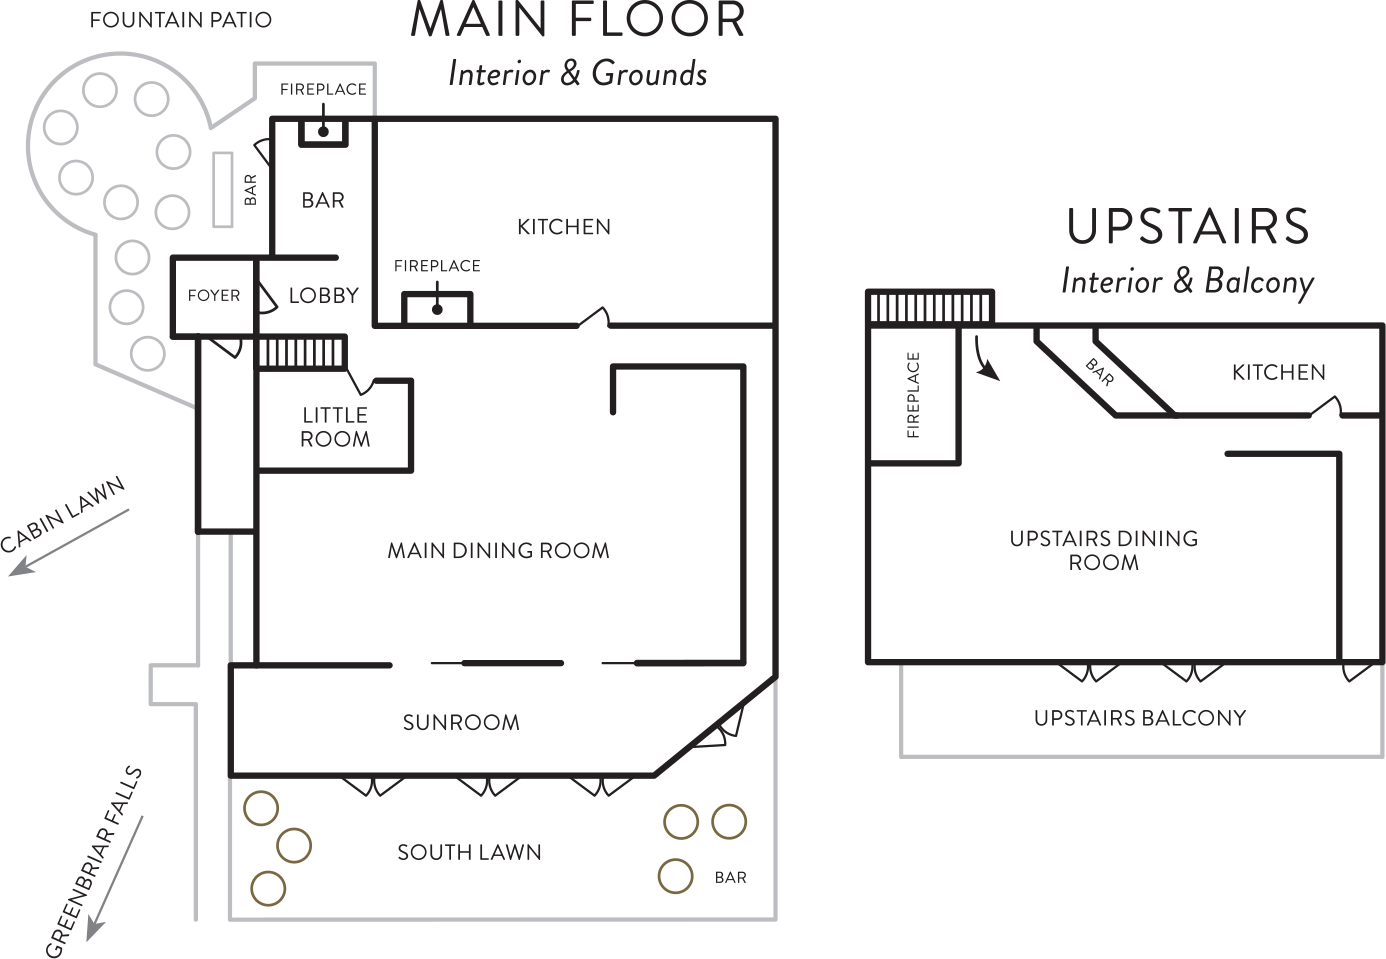 The Greenbriar Inn facility map